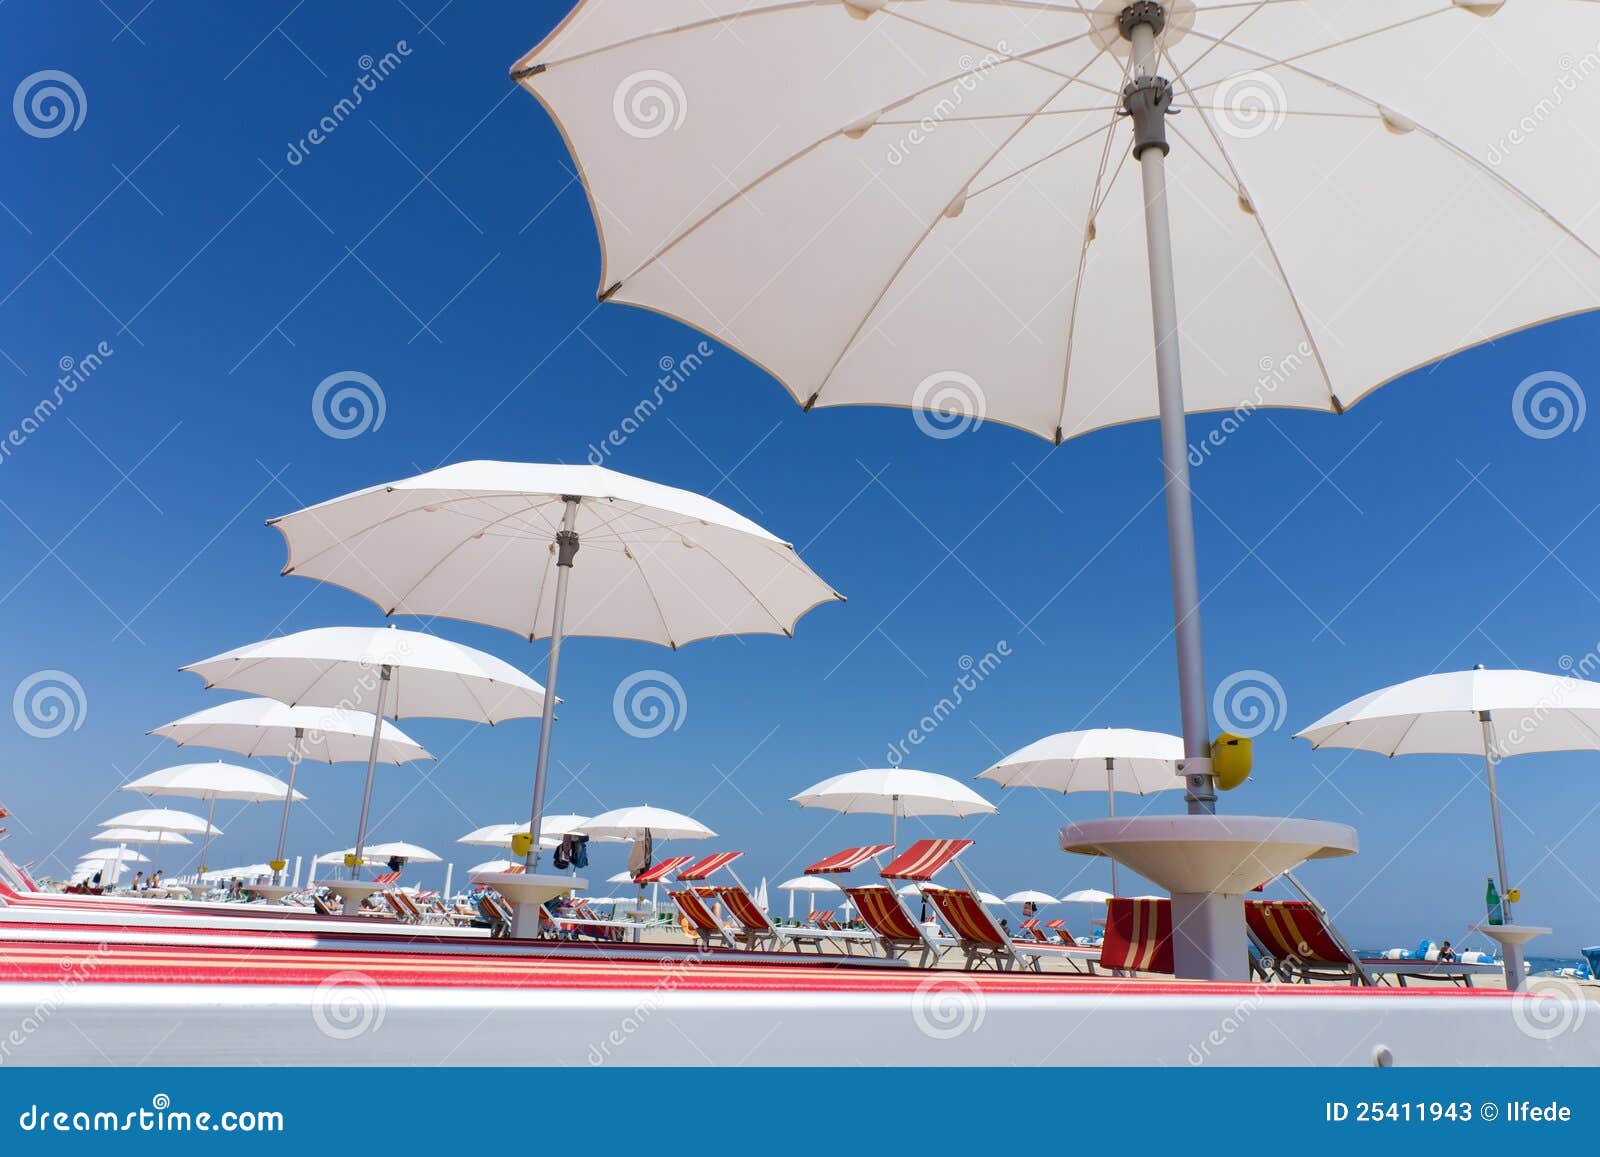 white beach umbrellas on rimini beach, italy